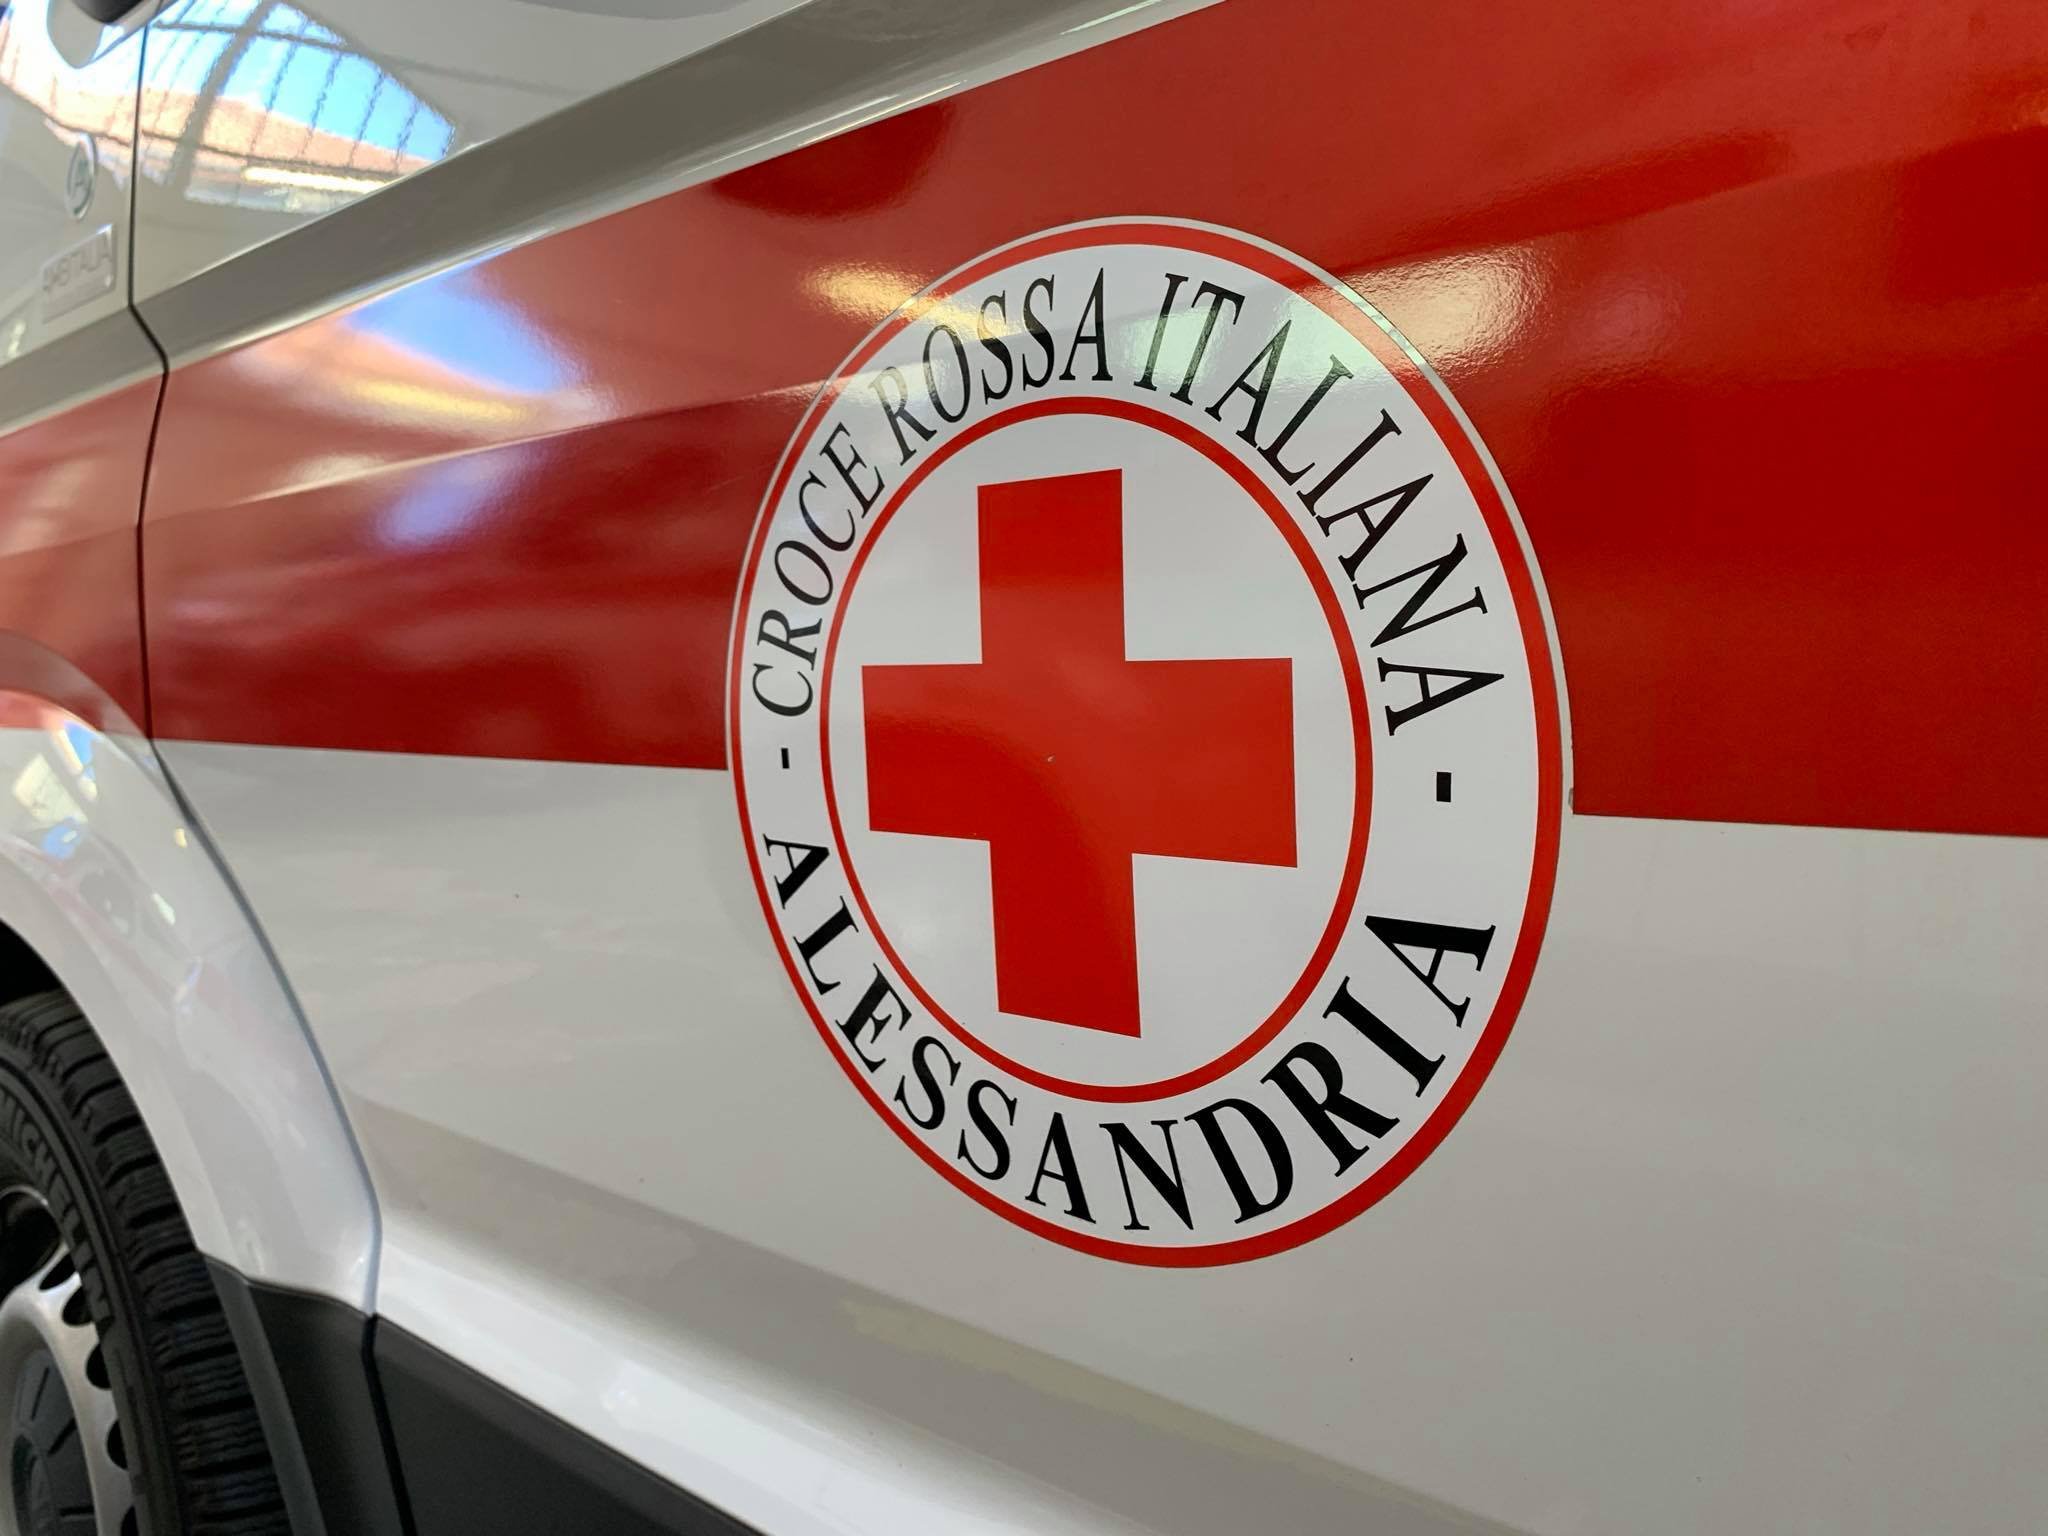 Fondazione Cassa di Risparmio dona alla Croce Rossa un nuovo mezzo per persone con disabilità